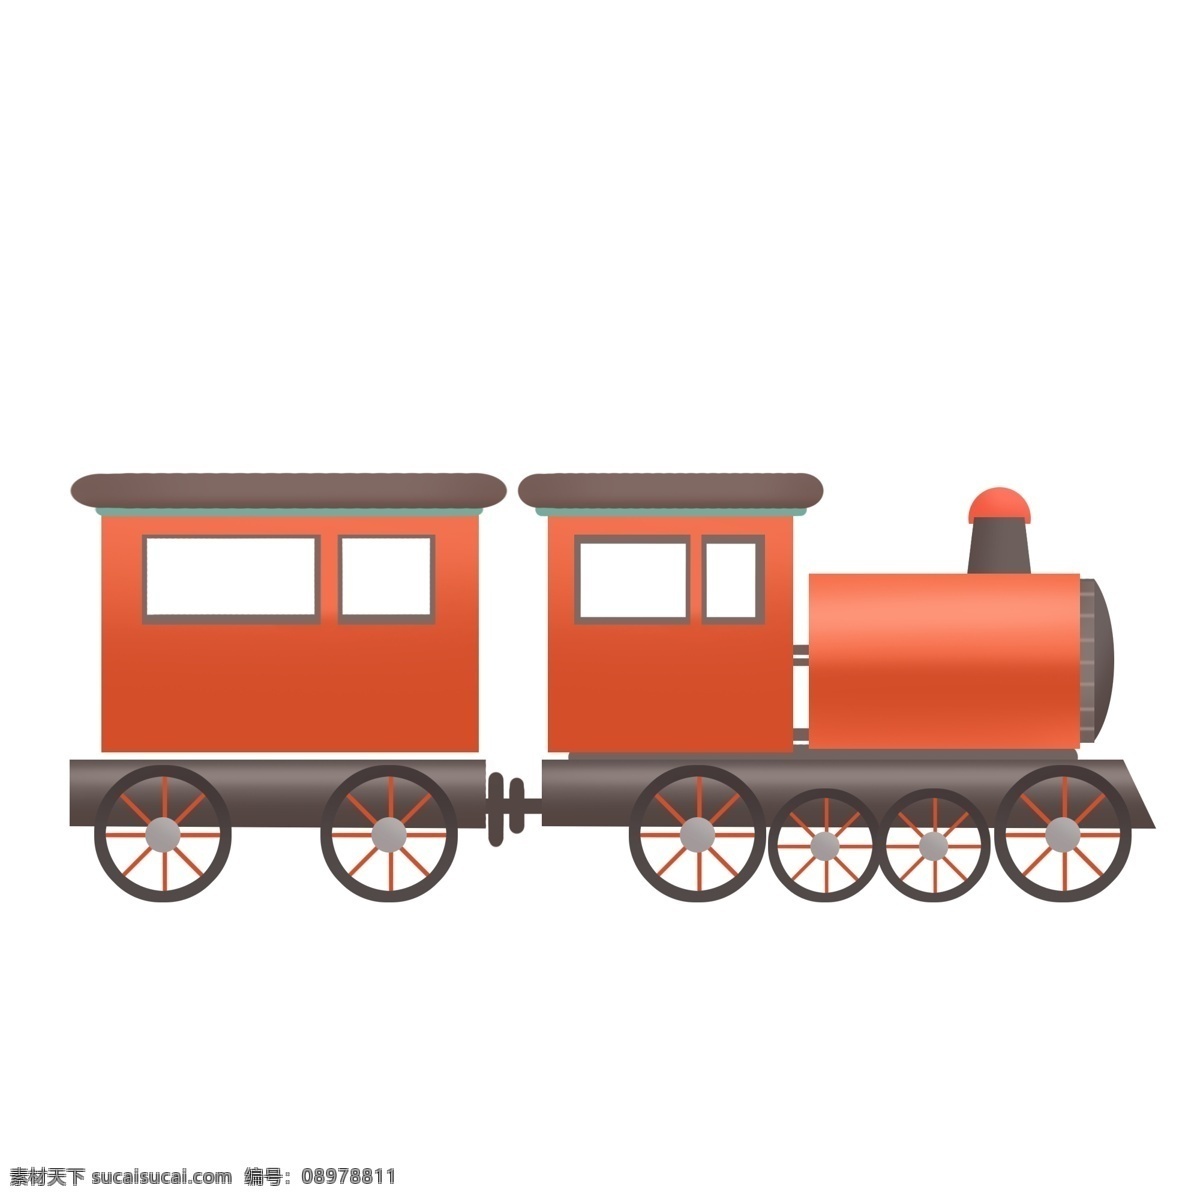 红色 小 火车 免 抠 小火车 火车车厢 原创手绘 卡通 行驶的火车 车轮 轮子 简单的小火车 火车车窗